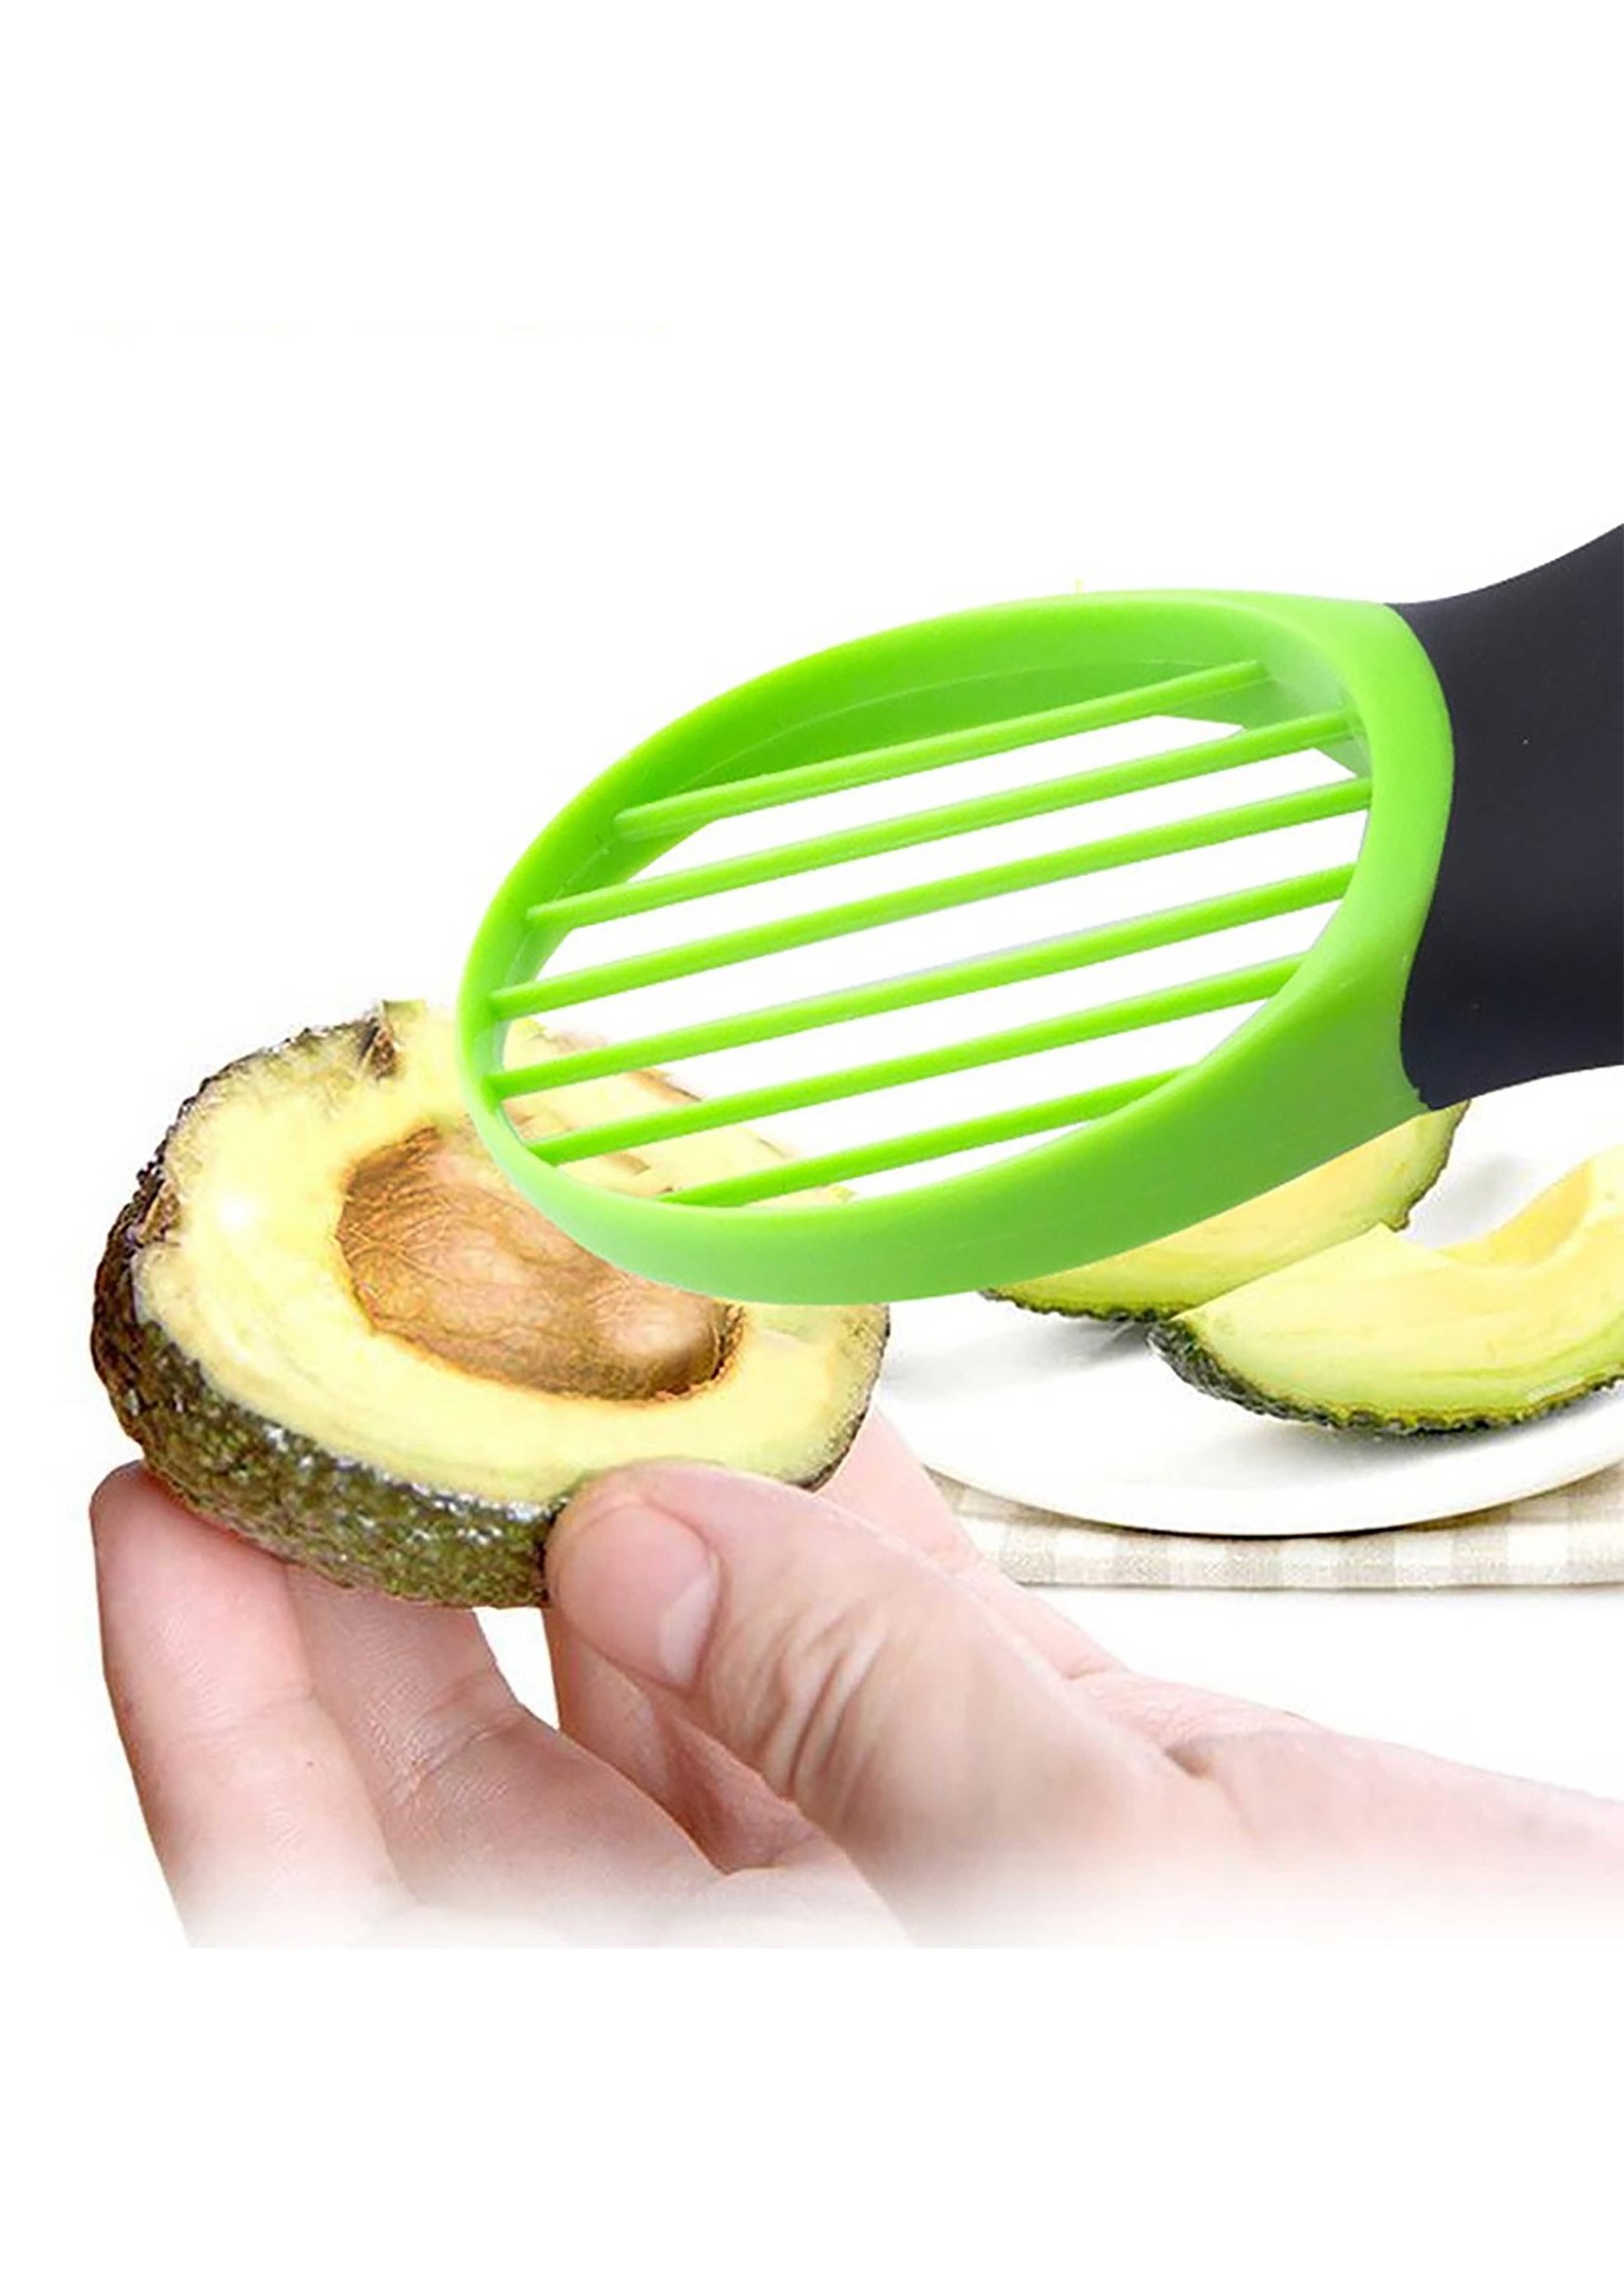 Avocado Slicer 3 in 1